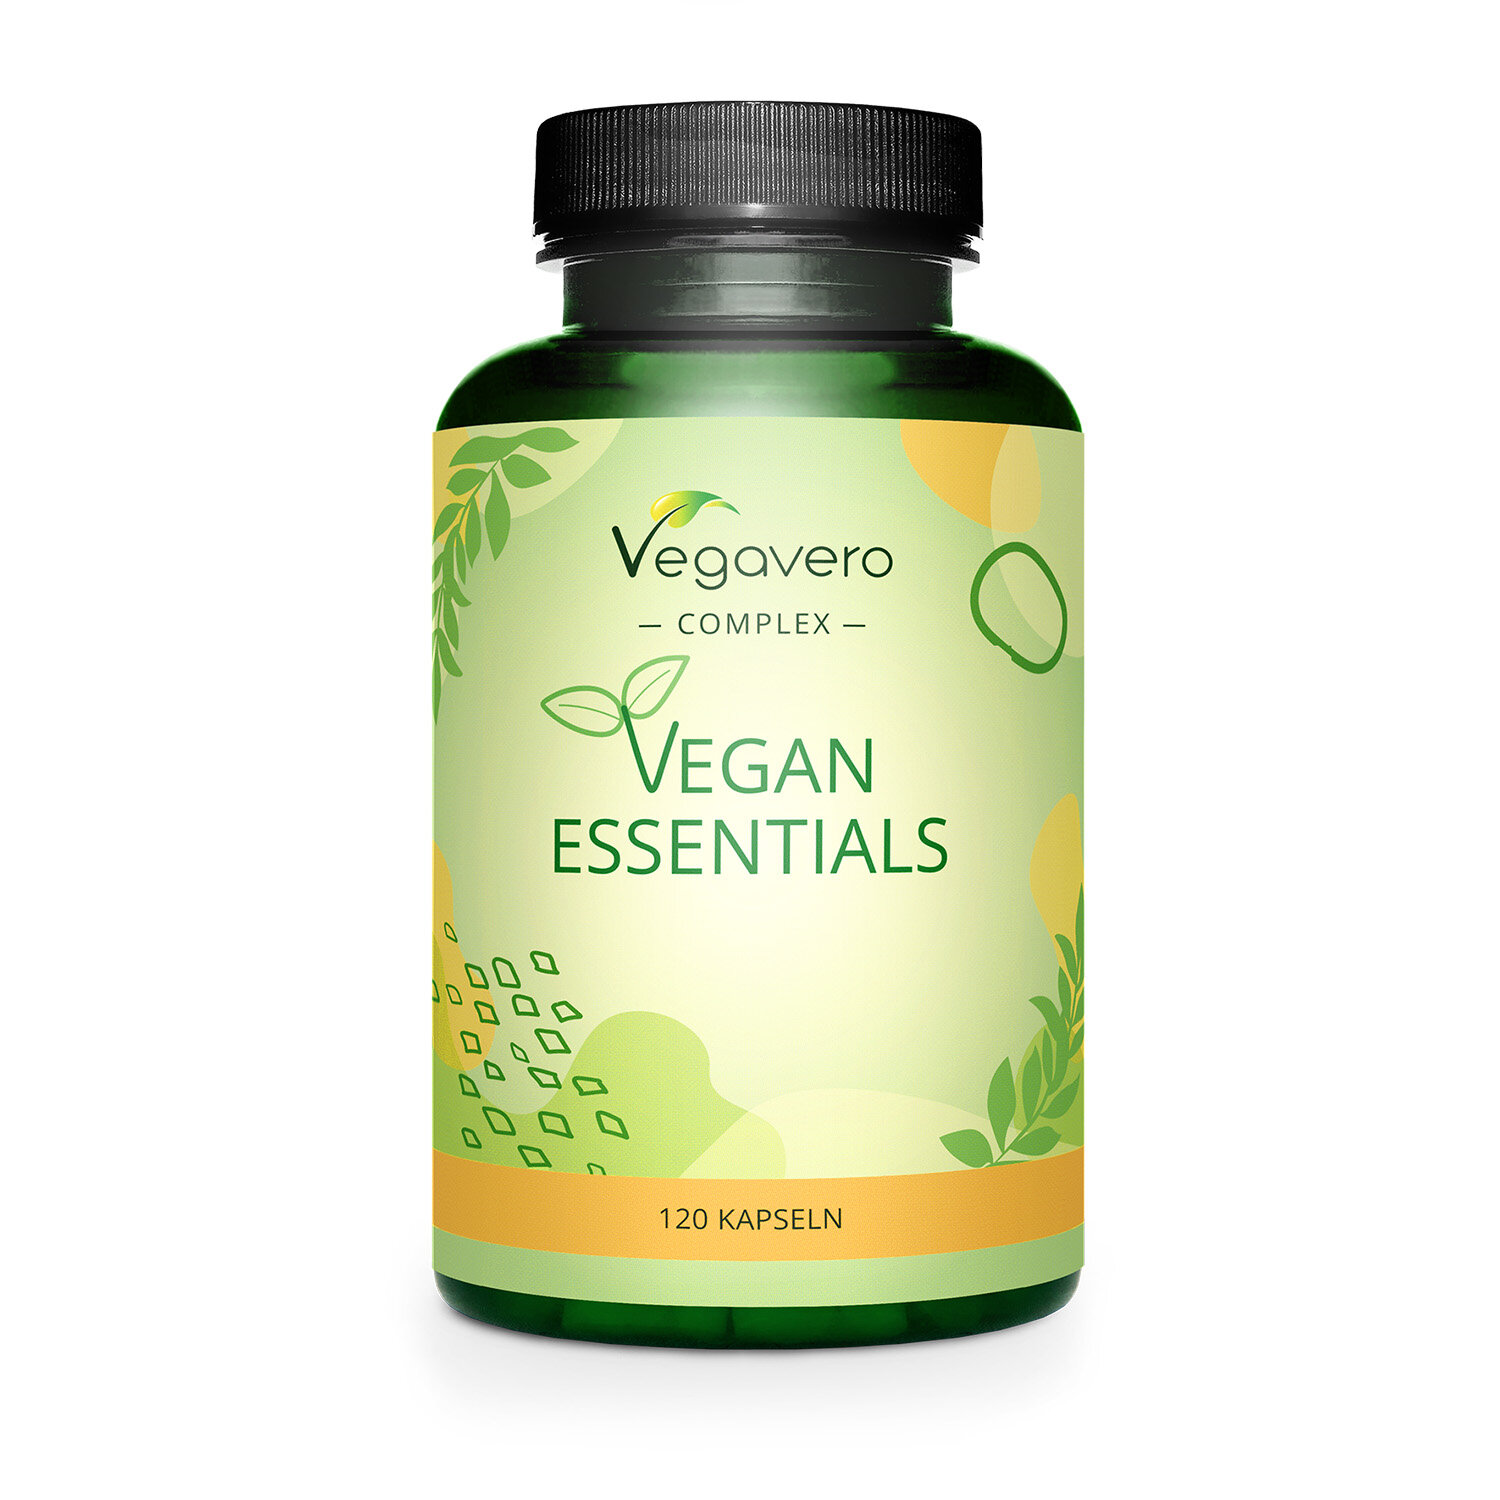 Vegavero Vegan Essentials | 120 Kapseln | Optimale Nährstoffversorgung für Veganer | mit bioaktiven Inhaltsstoffen